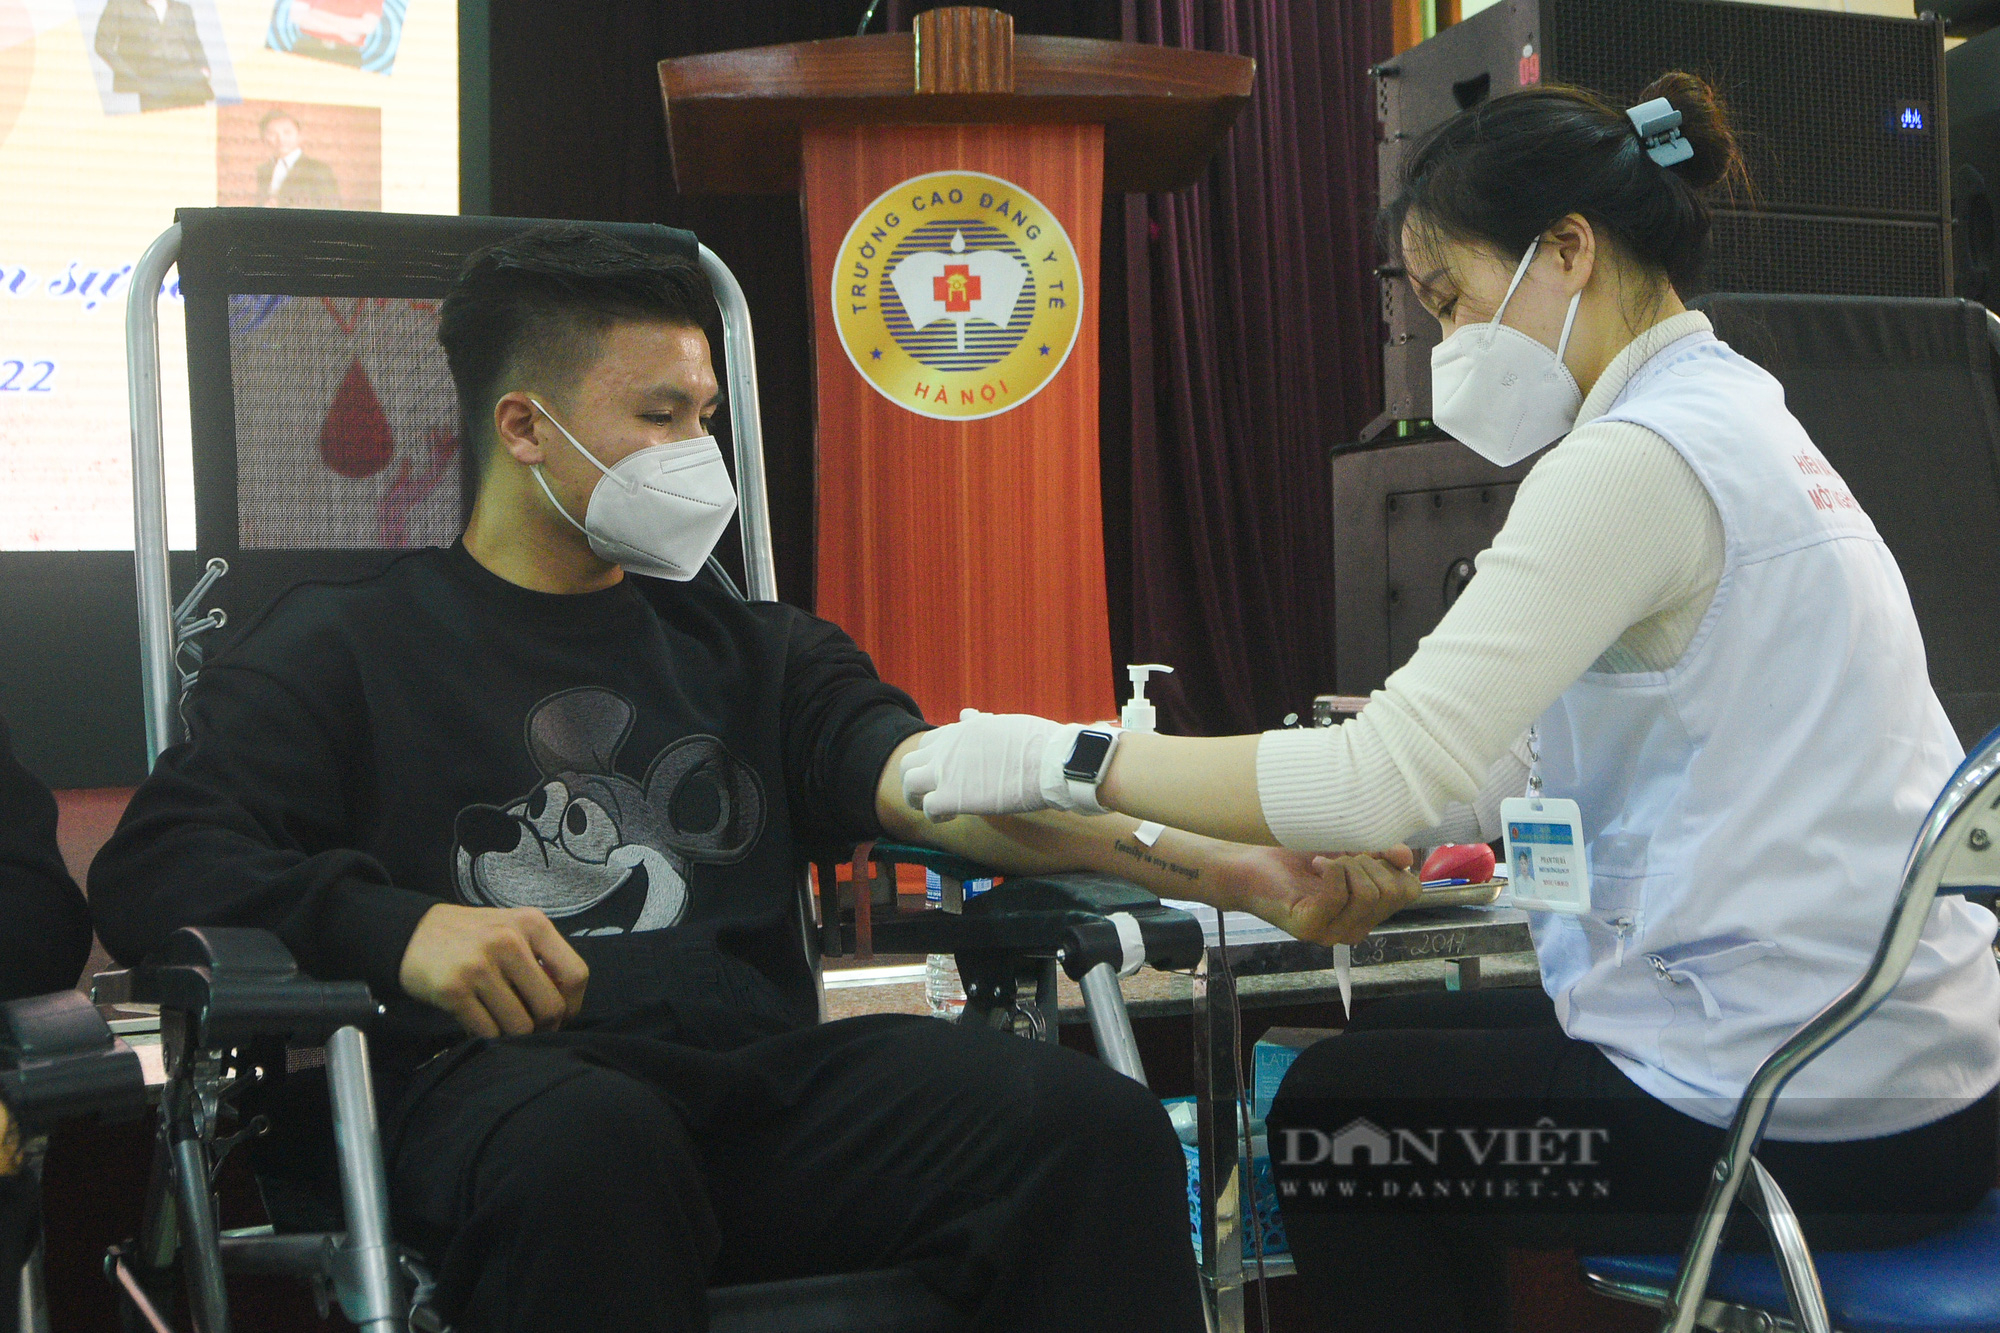 Cầu thủ Quang Hải, Văn Hậu, ca sĩ Tuấn Hưng thào hứng tham gia, kêu gọi hiến máu - Ảnh 6.